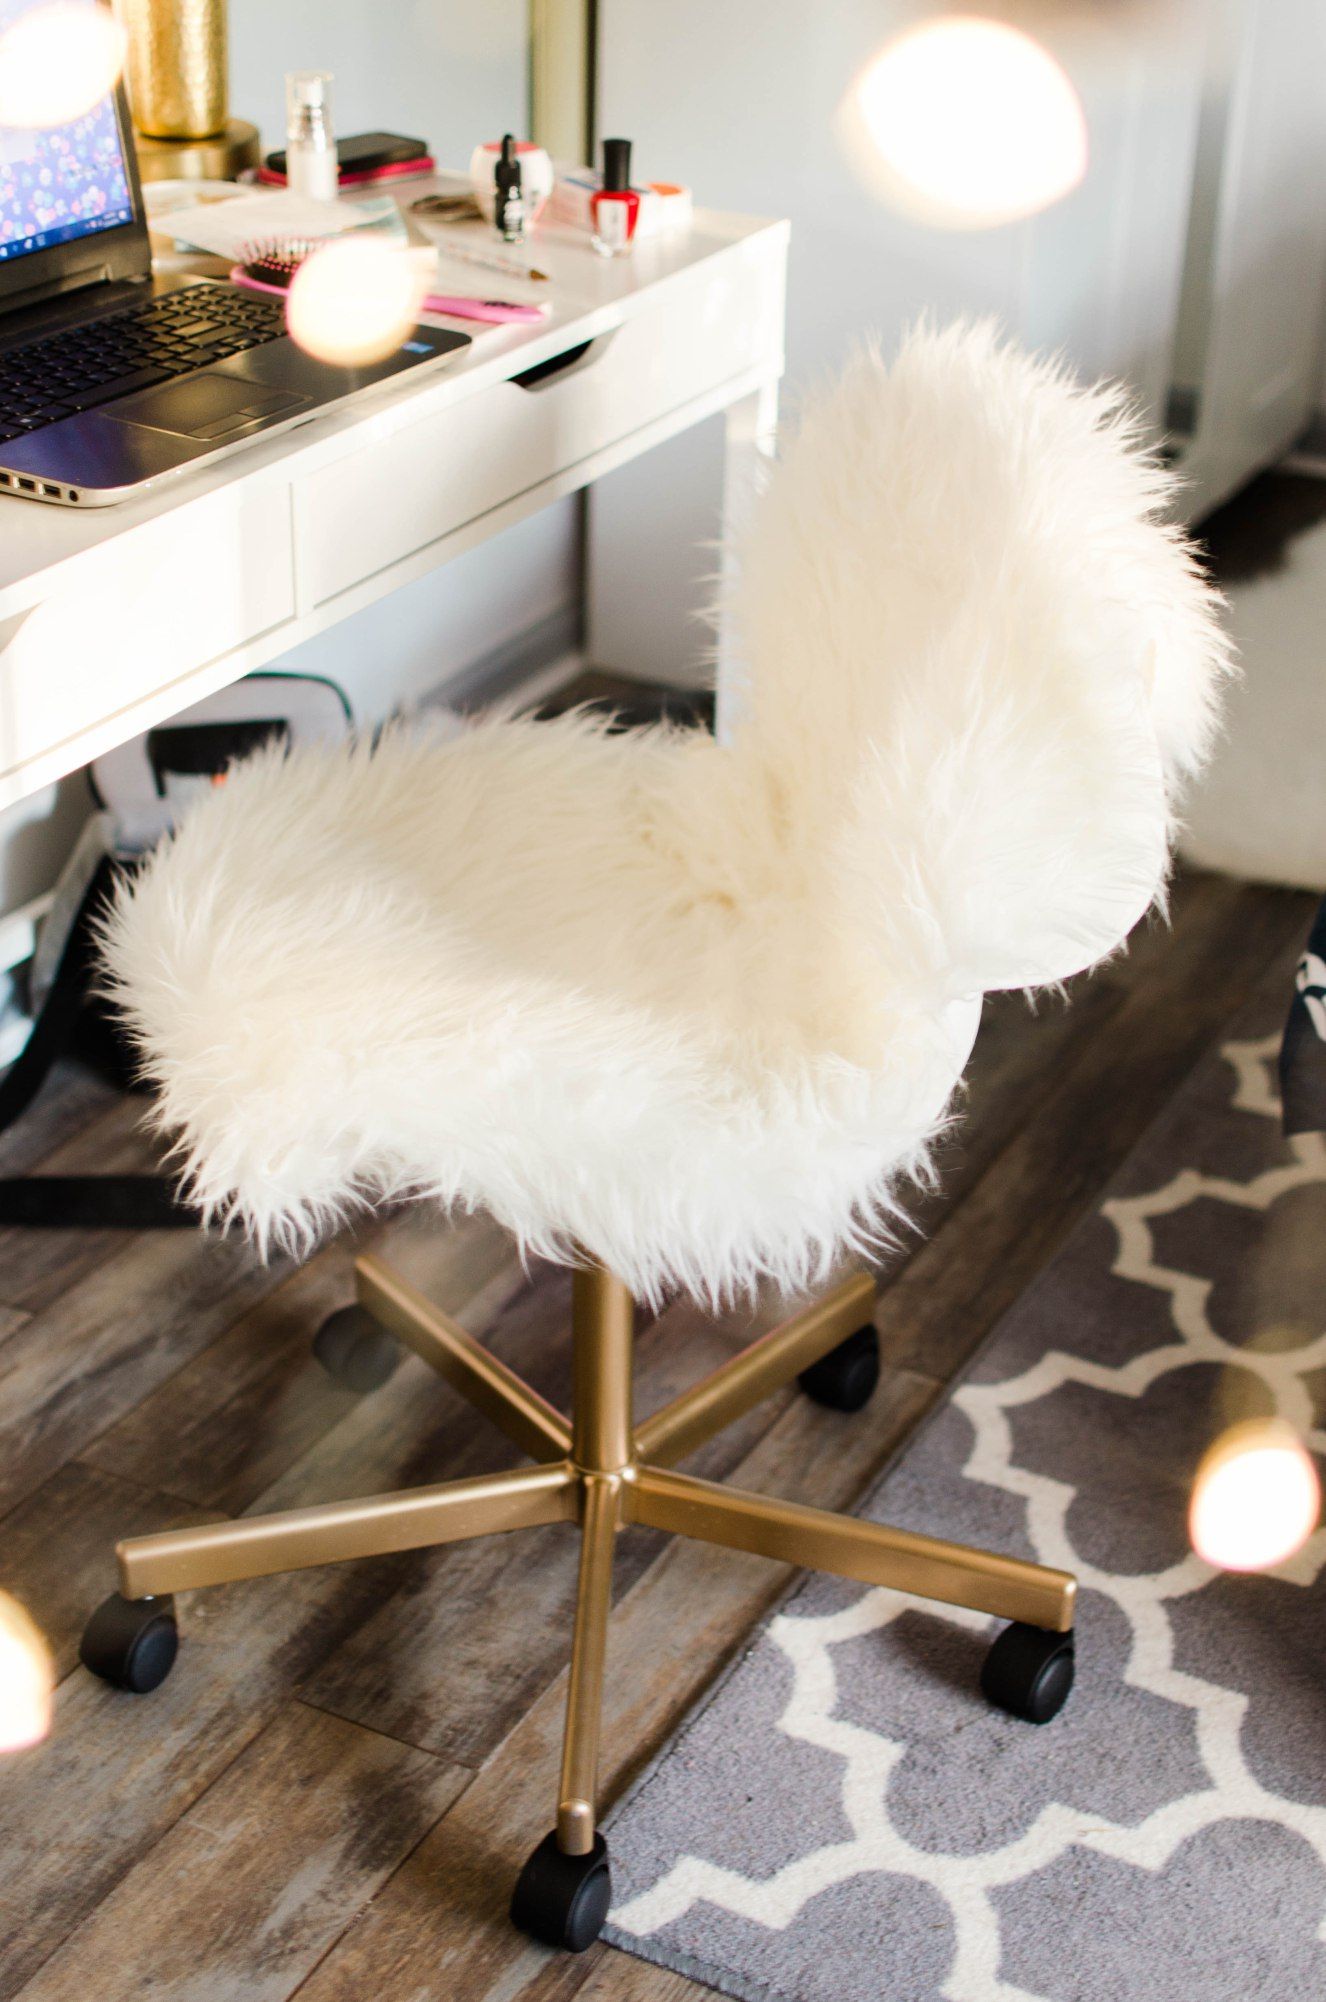 Đây là khu vực đa chức năng, kết hợp giữa bàn trang điểm và góc làm việc tại gia với nội thất nổi bật là chiếc ghế bọc lông thú trắng muốt, sang trọng.